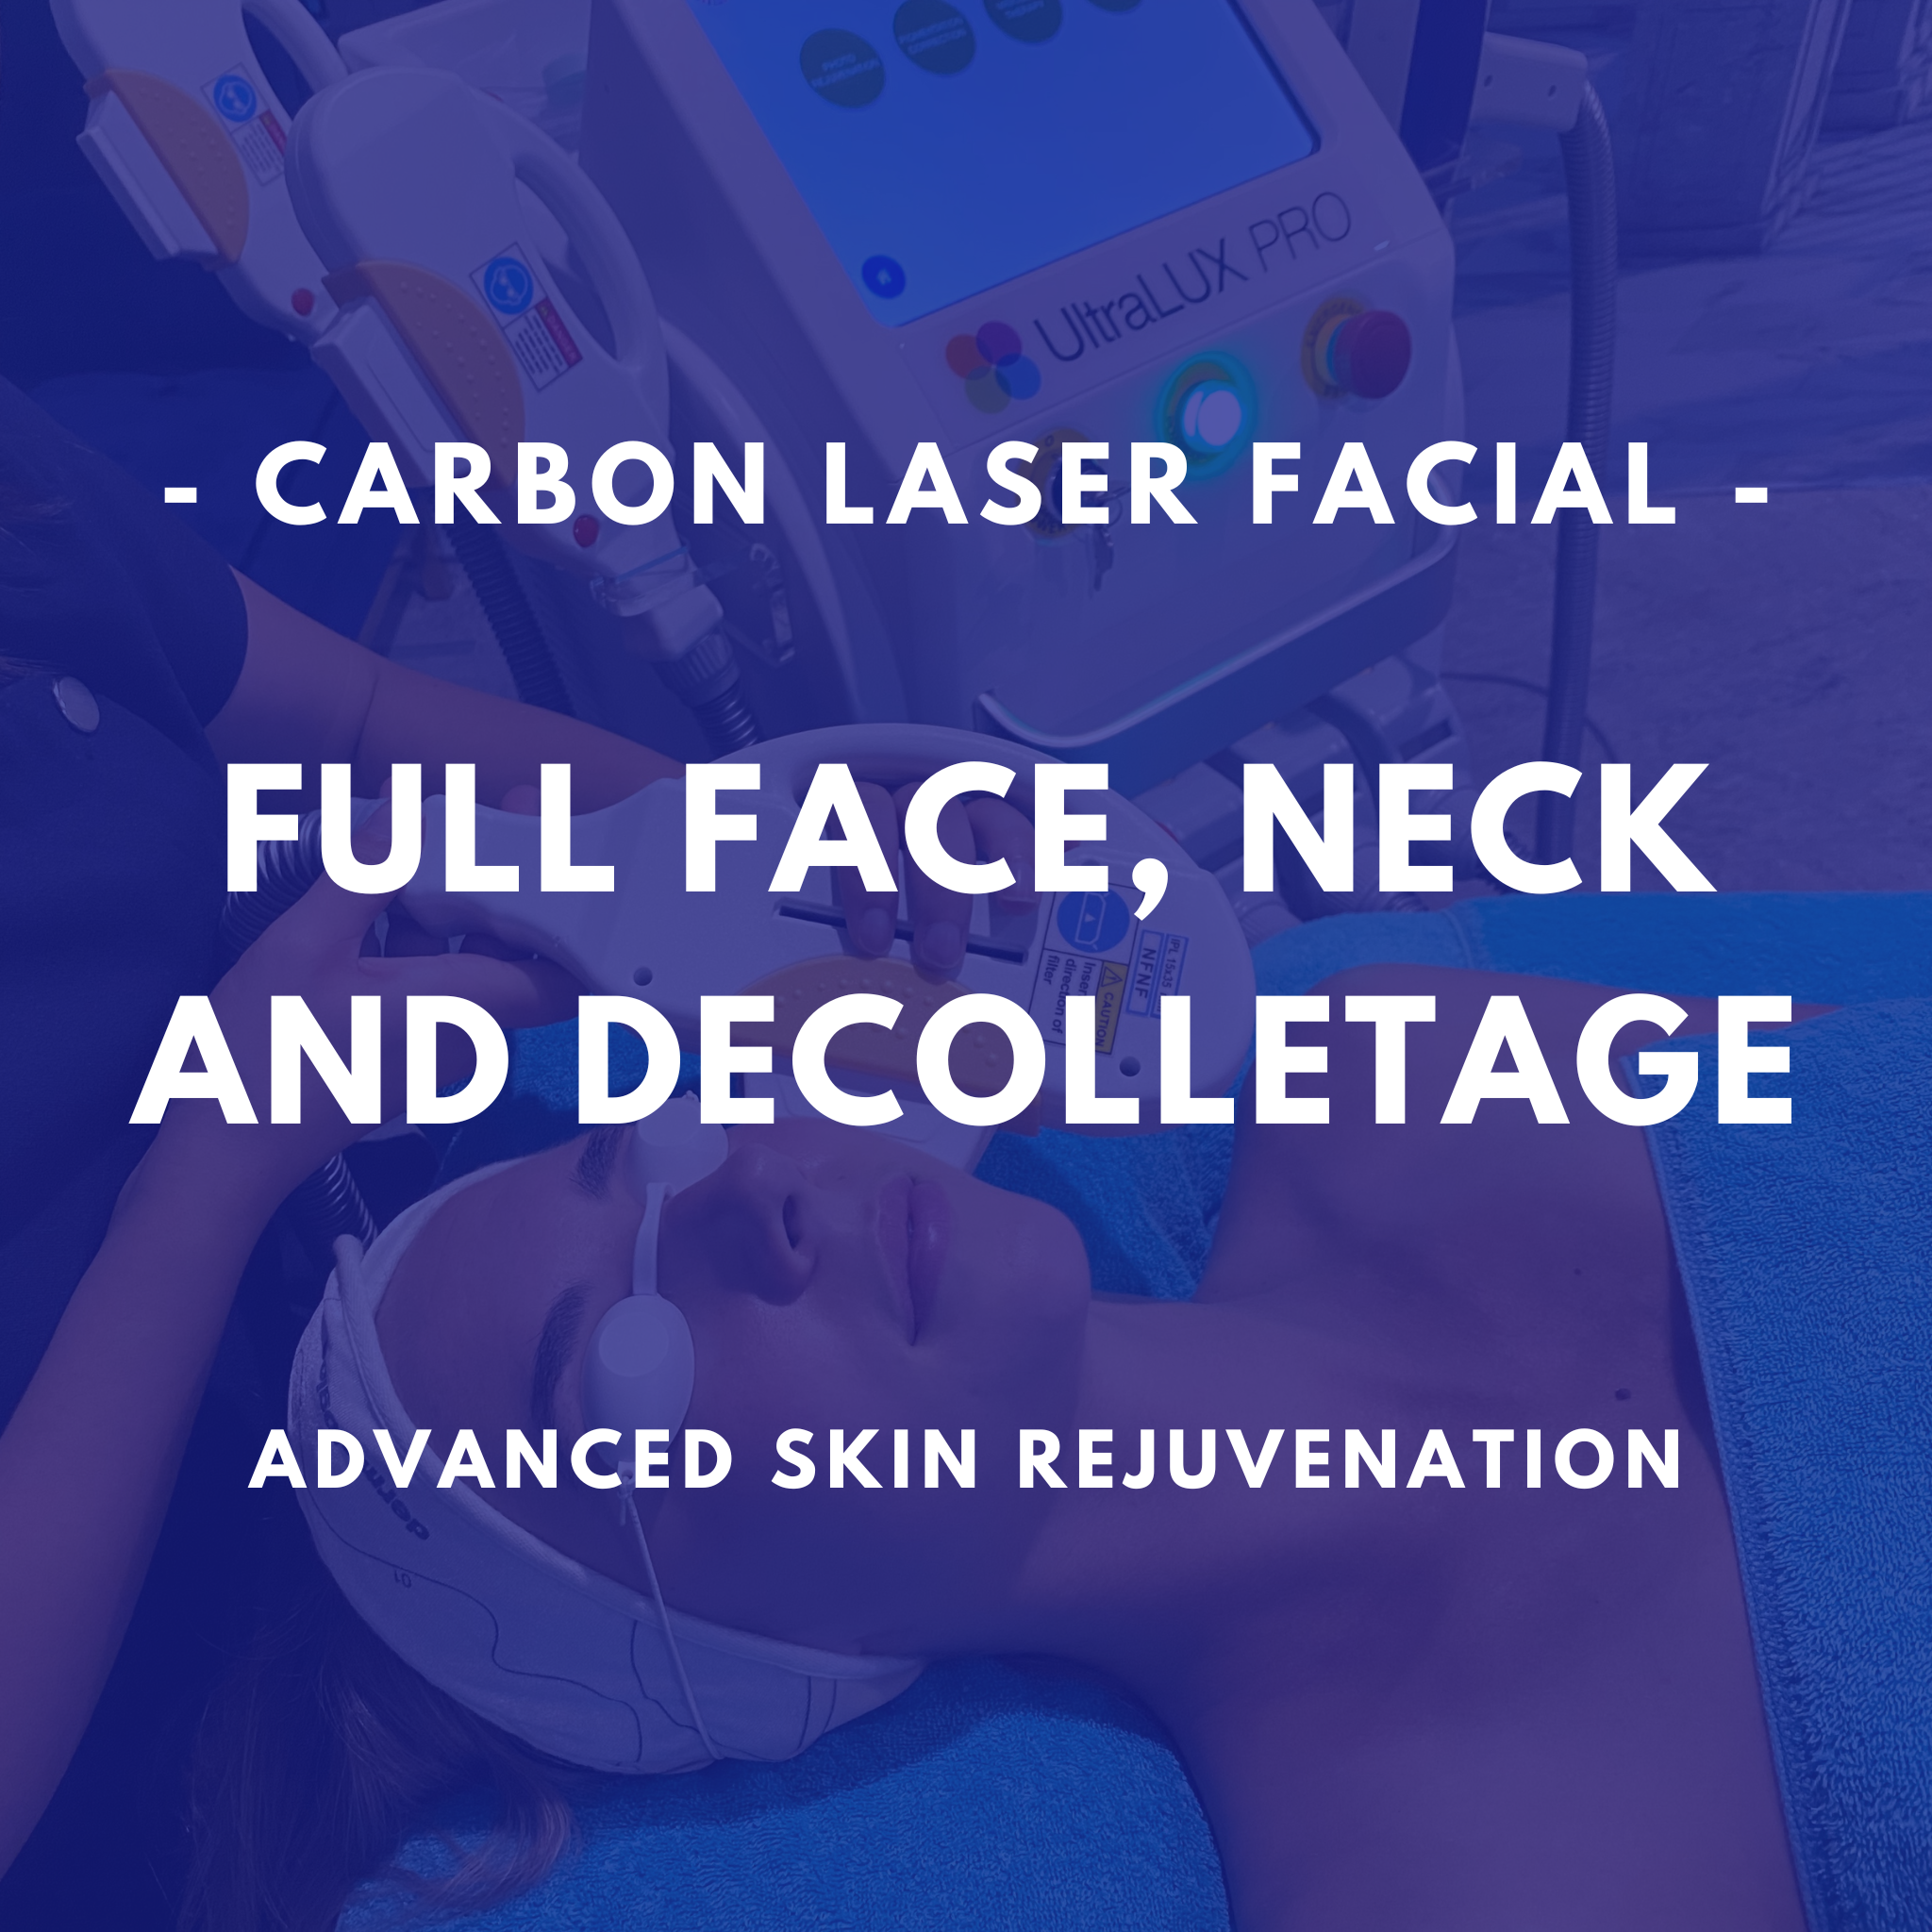 Carbon Laser Facial